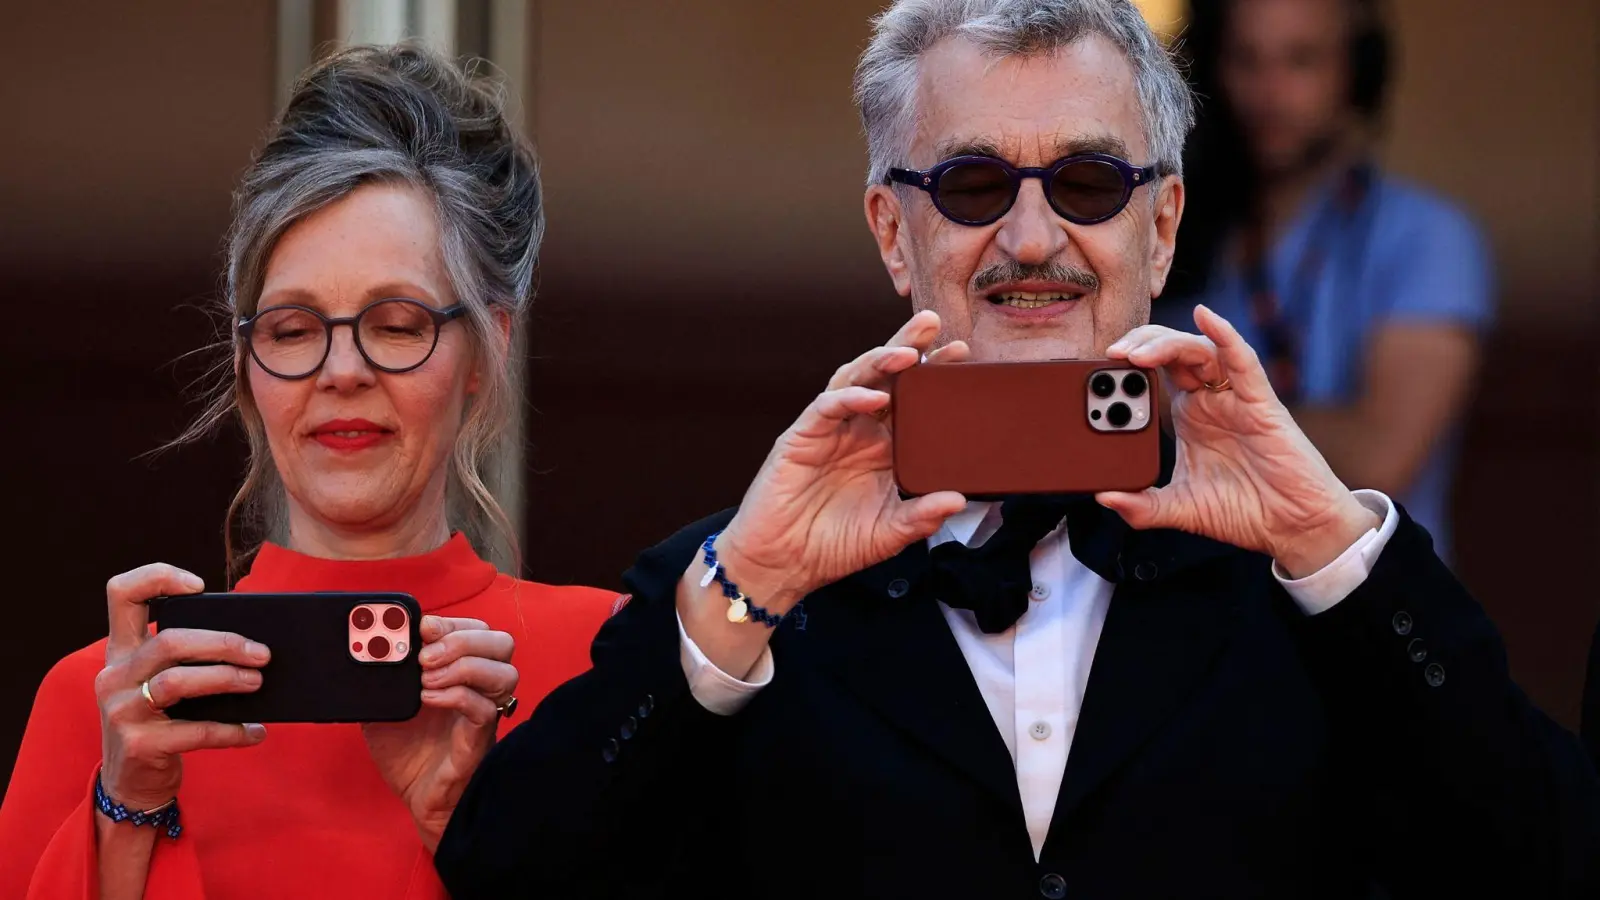 Sie ist vom Fach: Regisseur Wim Wenders macht mit seiner Frau Donata - die als Fotografin arbeitet - Fotos bei den Filmfestspielen in Cannes. (Foto: Valery Hache/AFP/dpa)